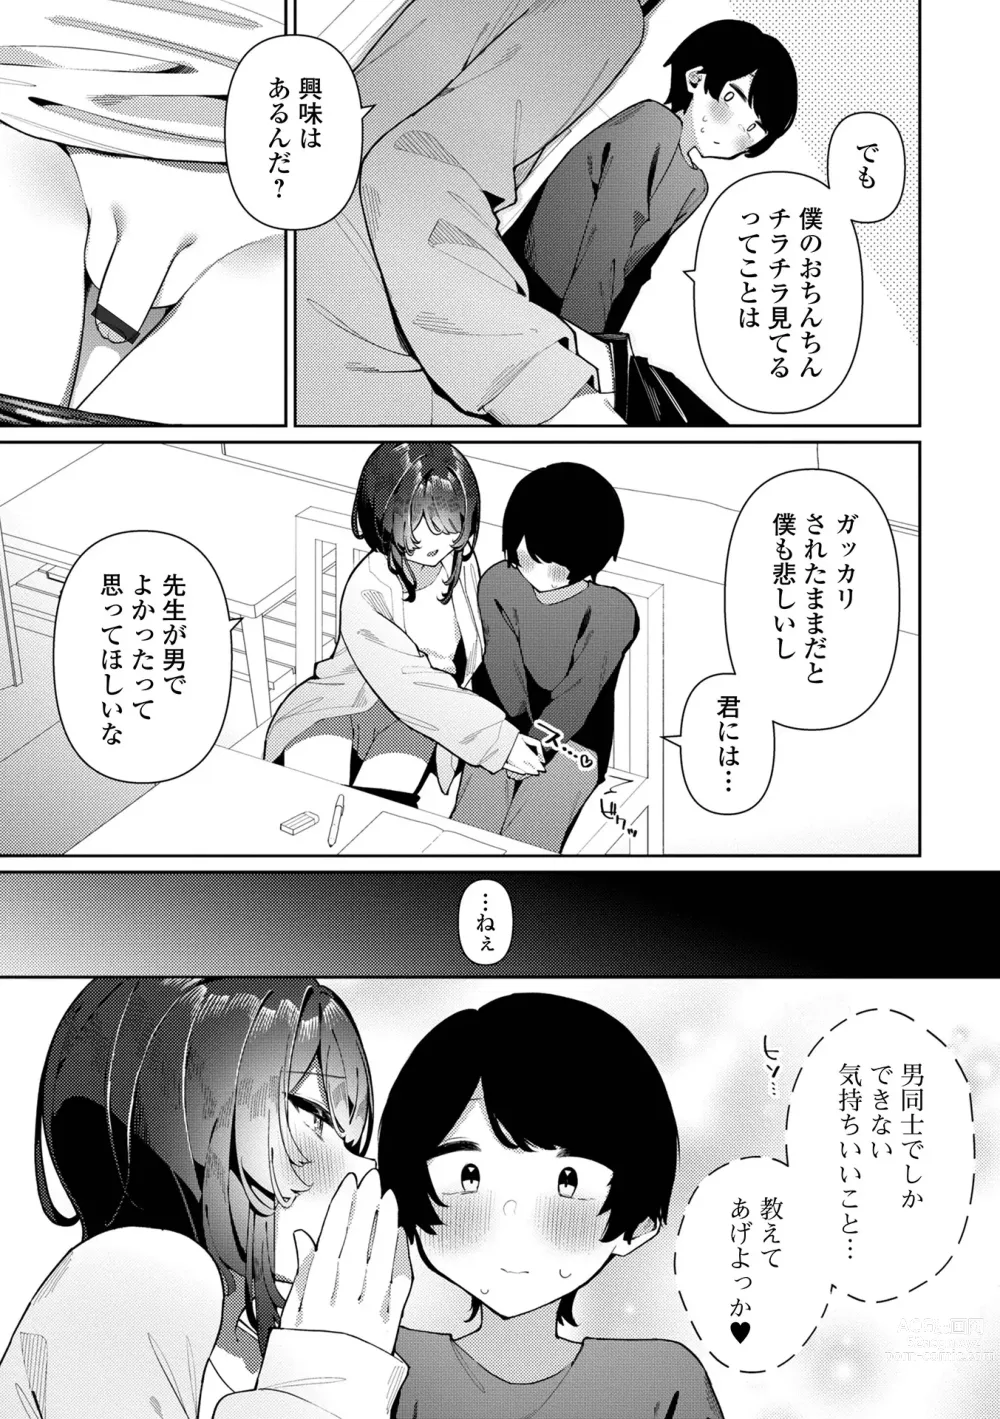 Page 7 of manga Gekkan Web Otoko no Ko-llection! S Vol. 90